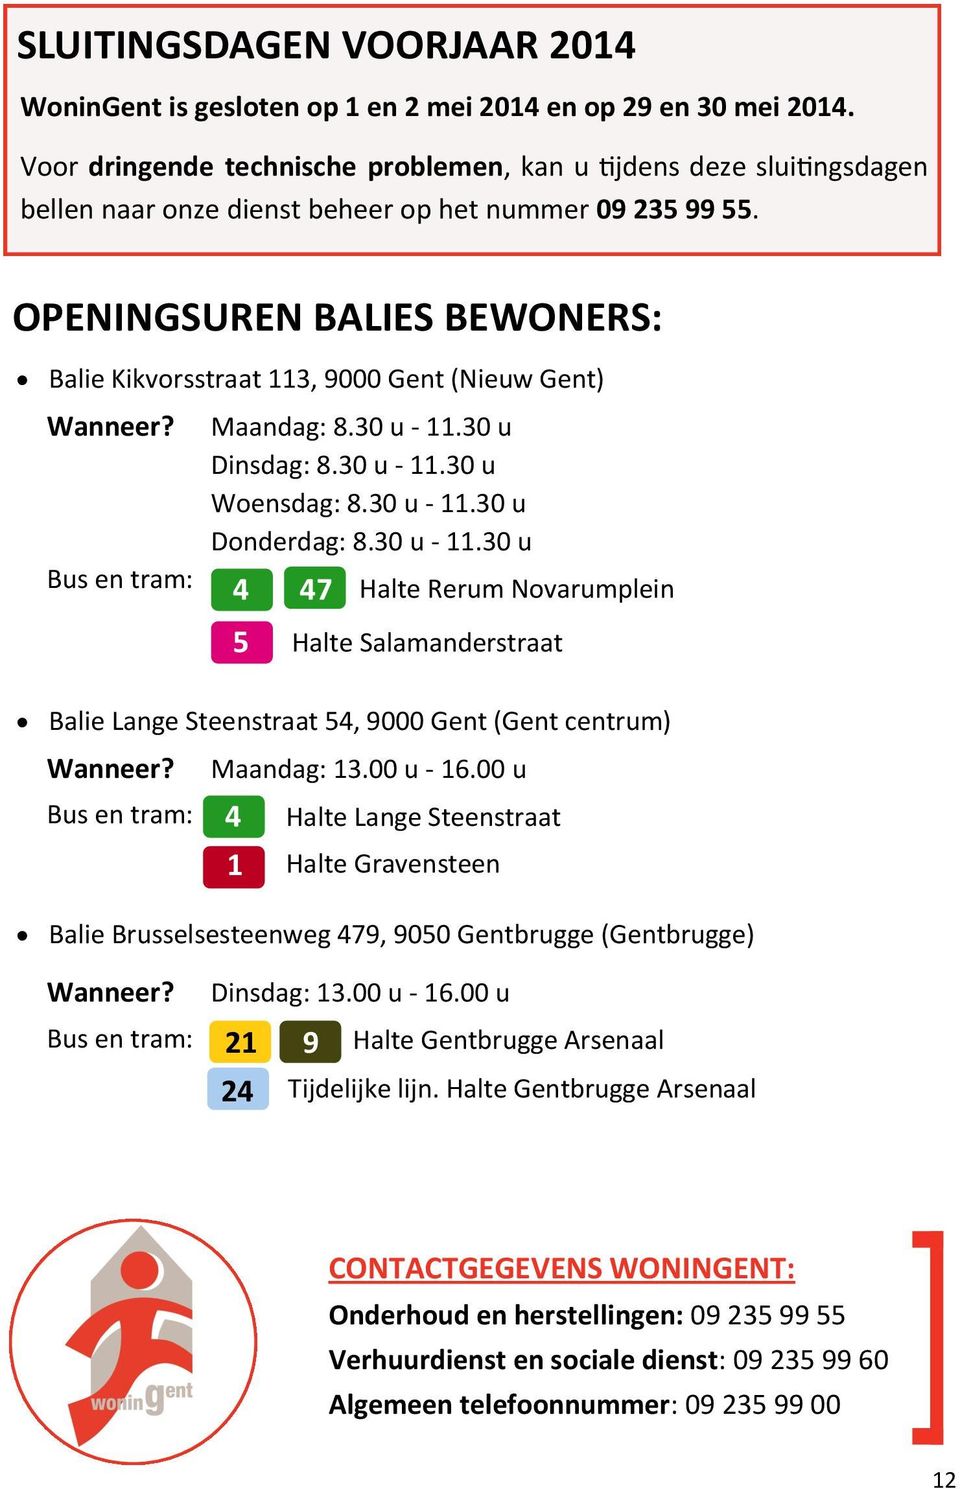 OPENINGSUREN BALIES BEWONERS: Balie Kikvorsstraat 113, 9000 Gent (Nieuw Gent) Wanneer? Bus en tram: Maandag: 8.30 u - 11.30 u Dinsdag: 8.30 u - 11.30 u Woensdag: 8.30 u - 11.30 u Donderdag: 8.